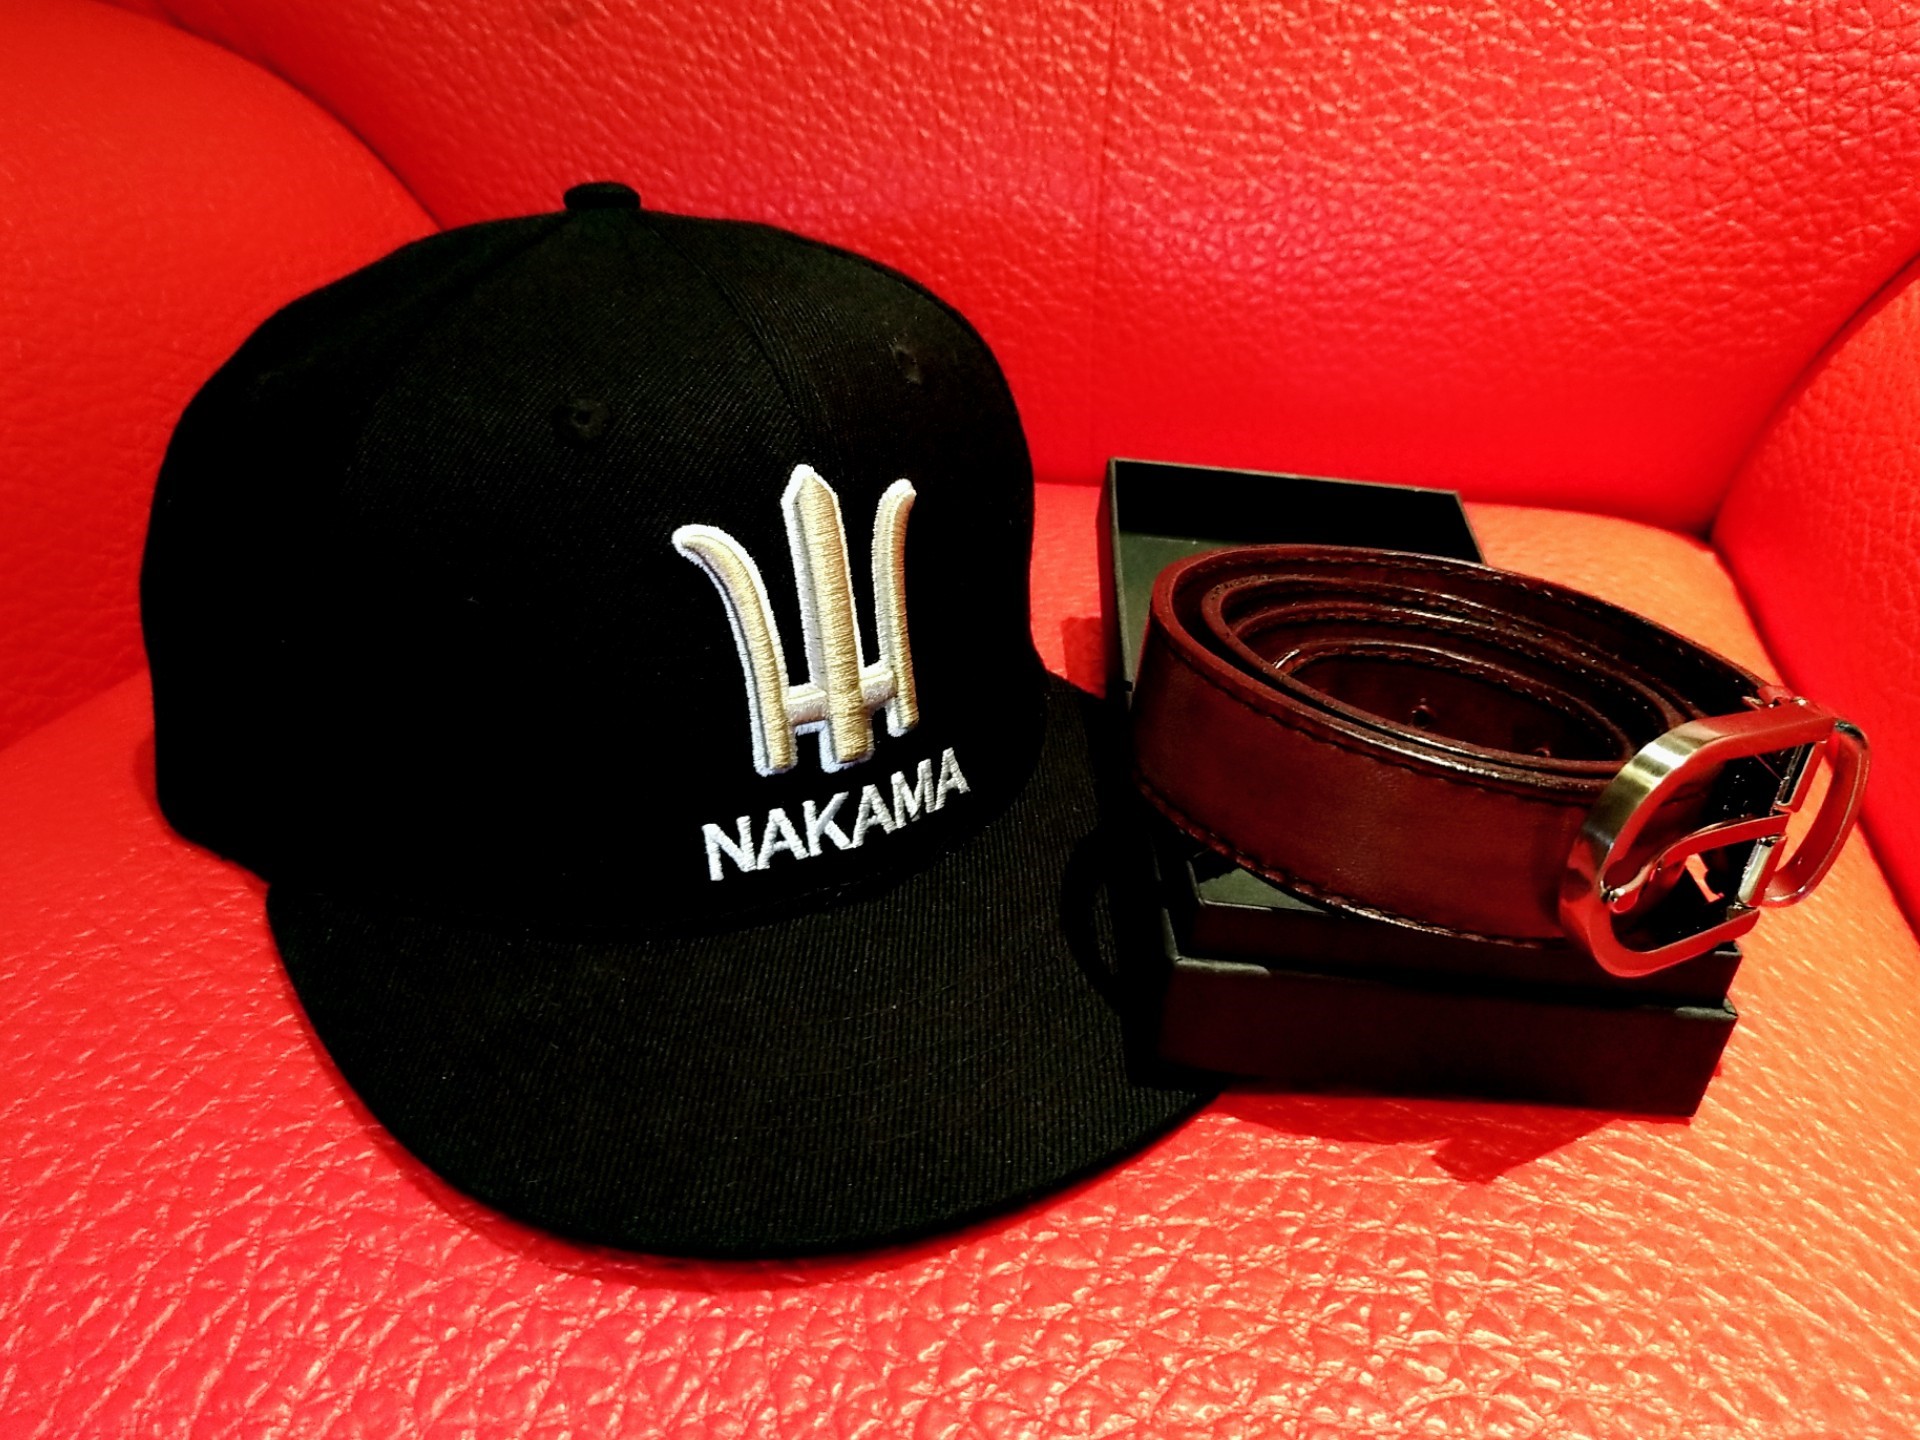 Nakama拿卡碼遠紅外線手環